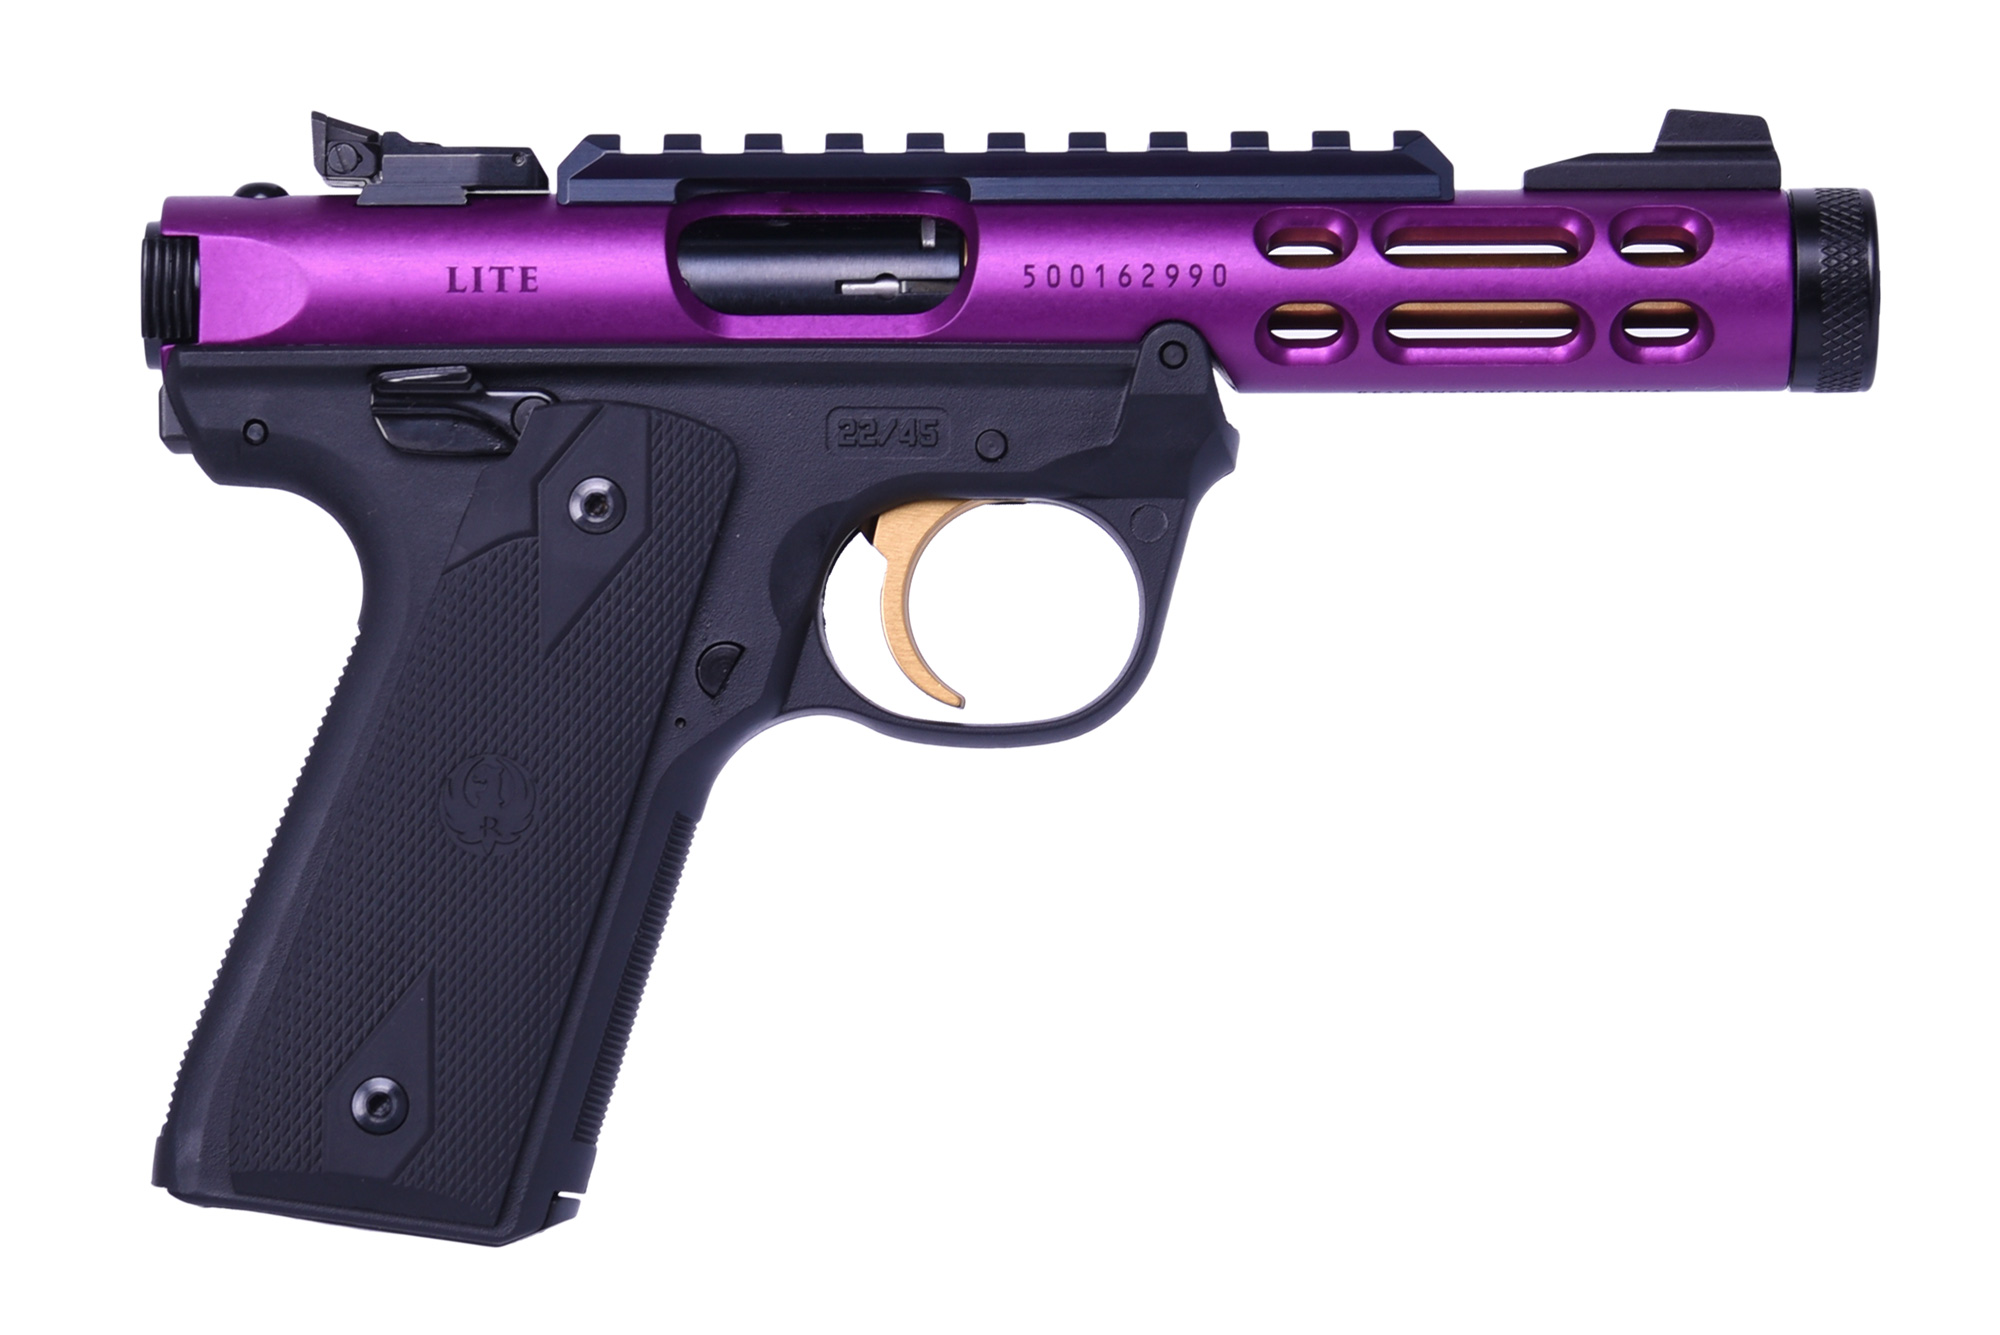 Ruger MRK IV 22/45 Lite, 22LR Pistol, Exclusive Purple and Gold Finish (43931)